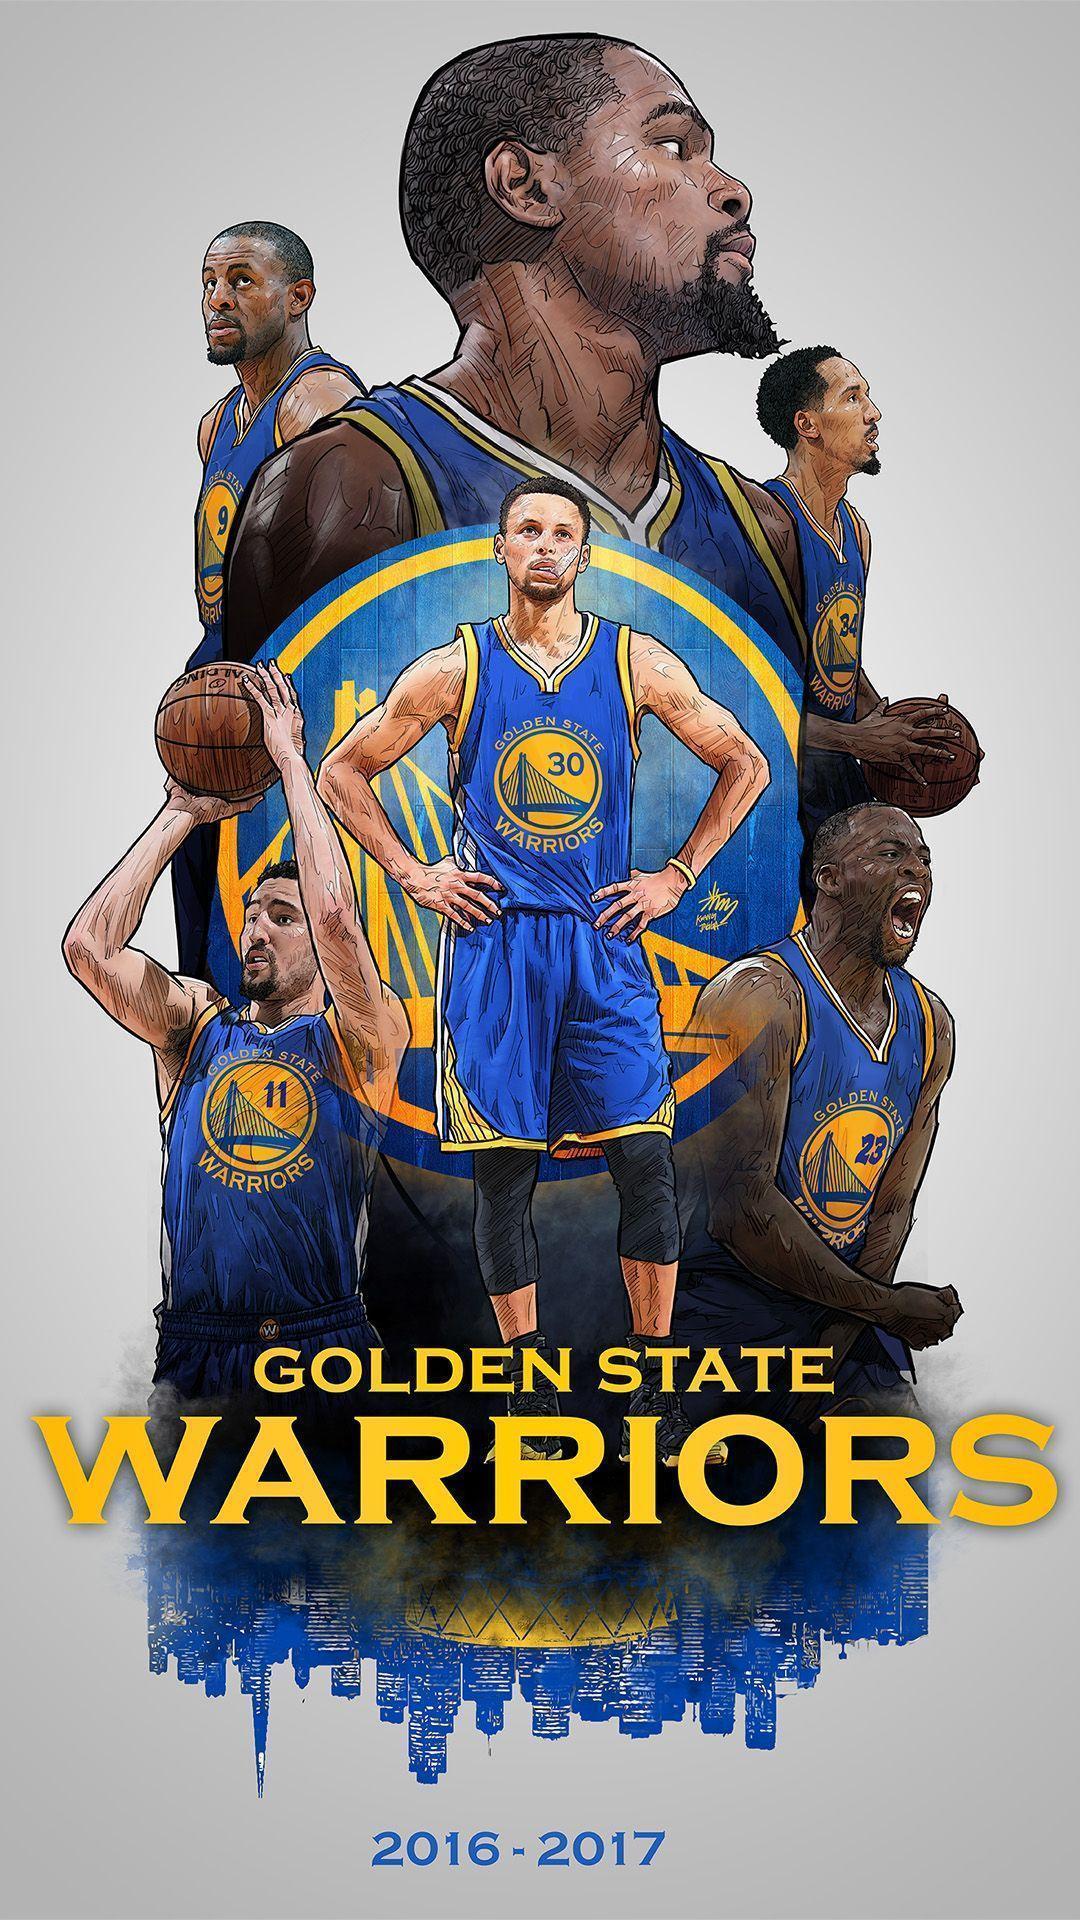 Warriors 20 Wallpapers   Top Free Warriors 20 Backgrounds ...